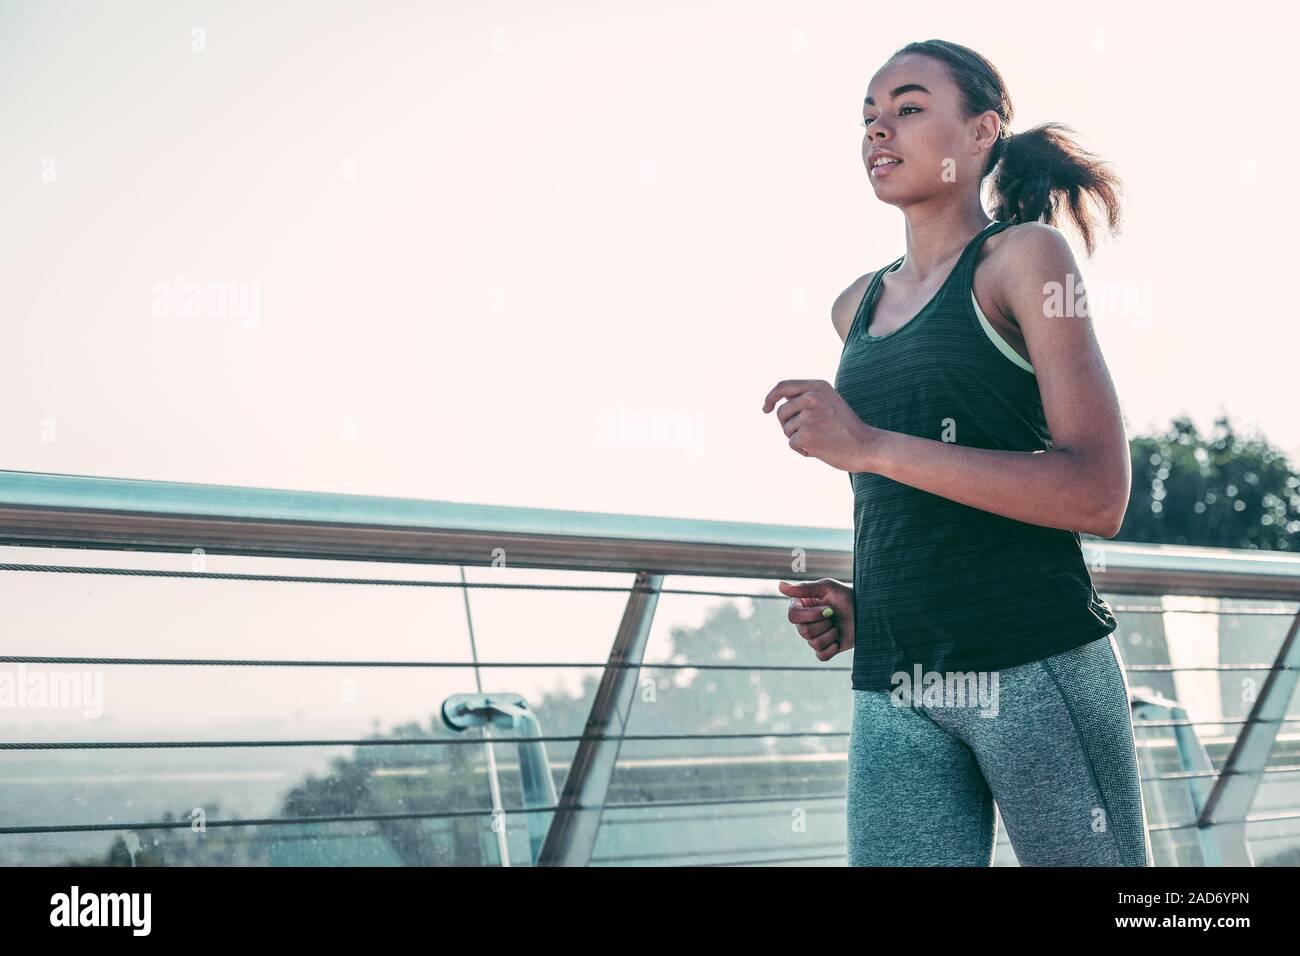 Junge Dame alleine Joggen im Freien foto- Stockfoto